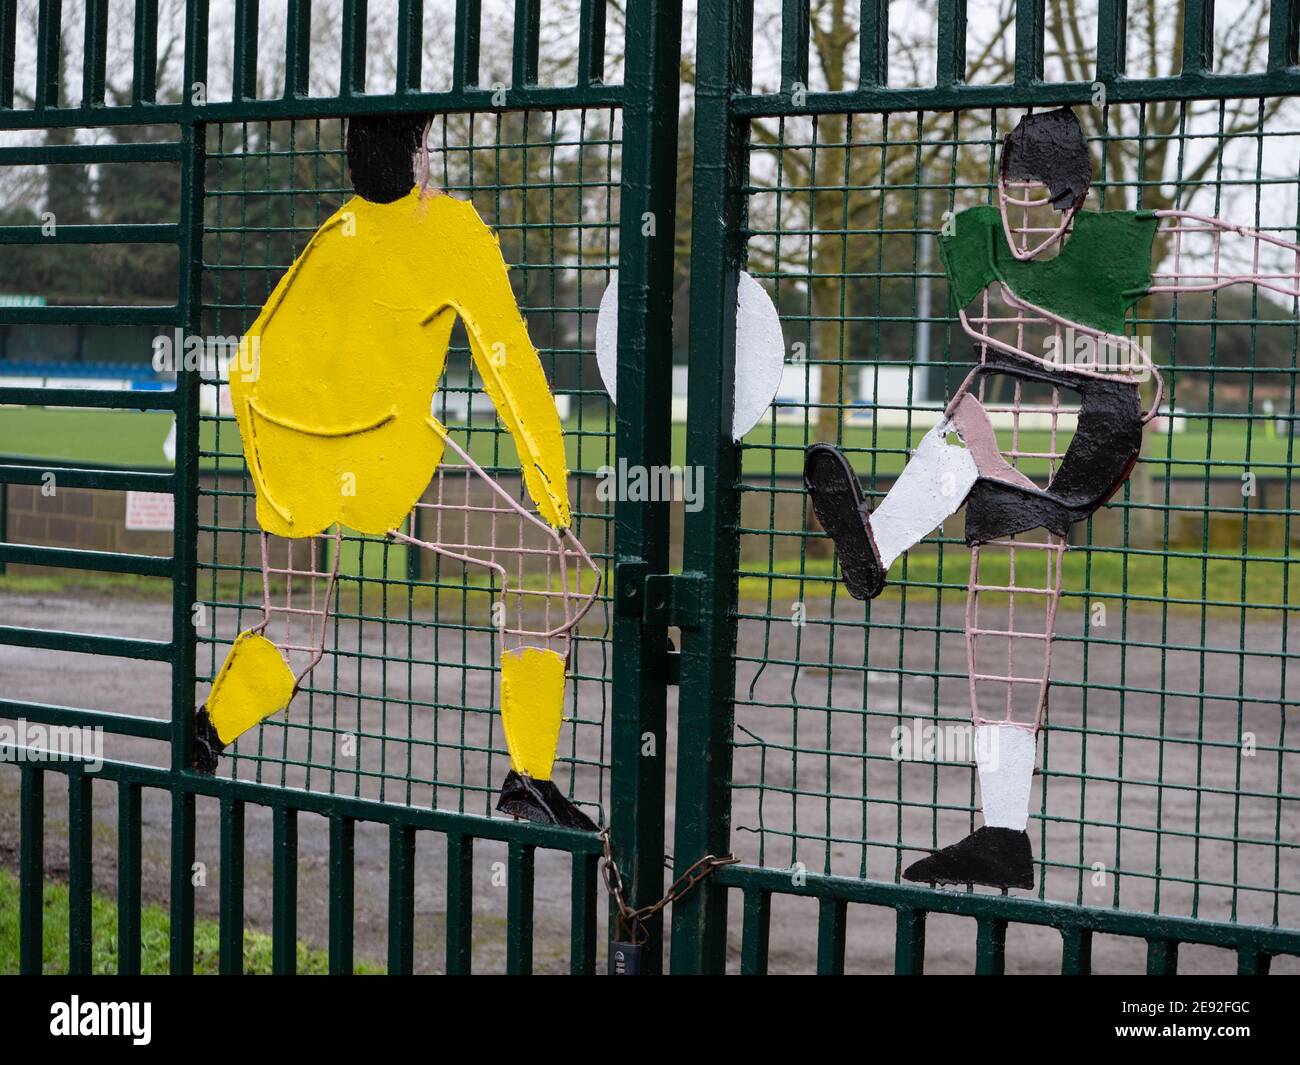 Eingangstore zum Westbury United Football Club, in dem die Spieler Skulpturen bemalt haben. Stockfoto